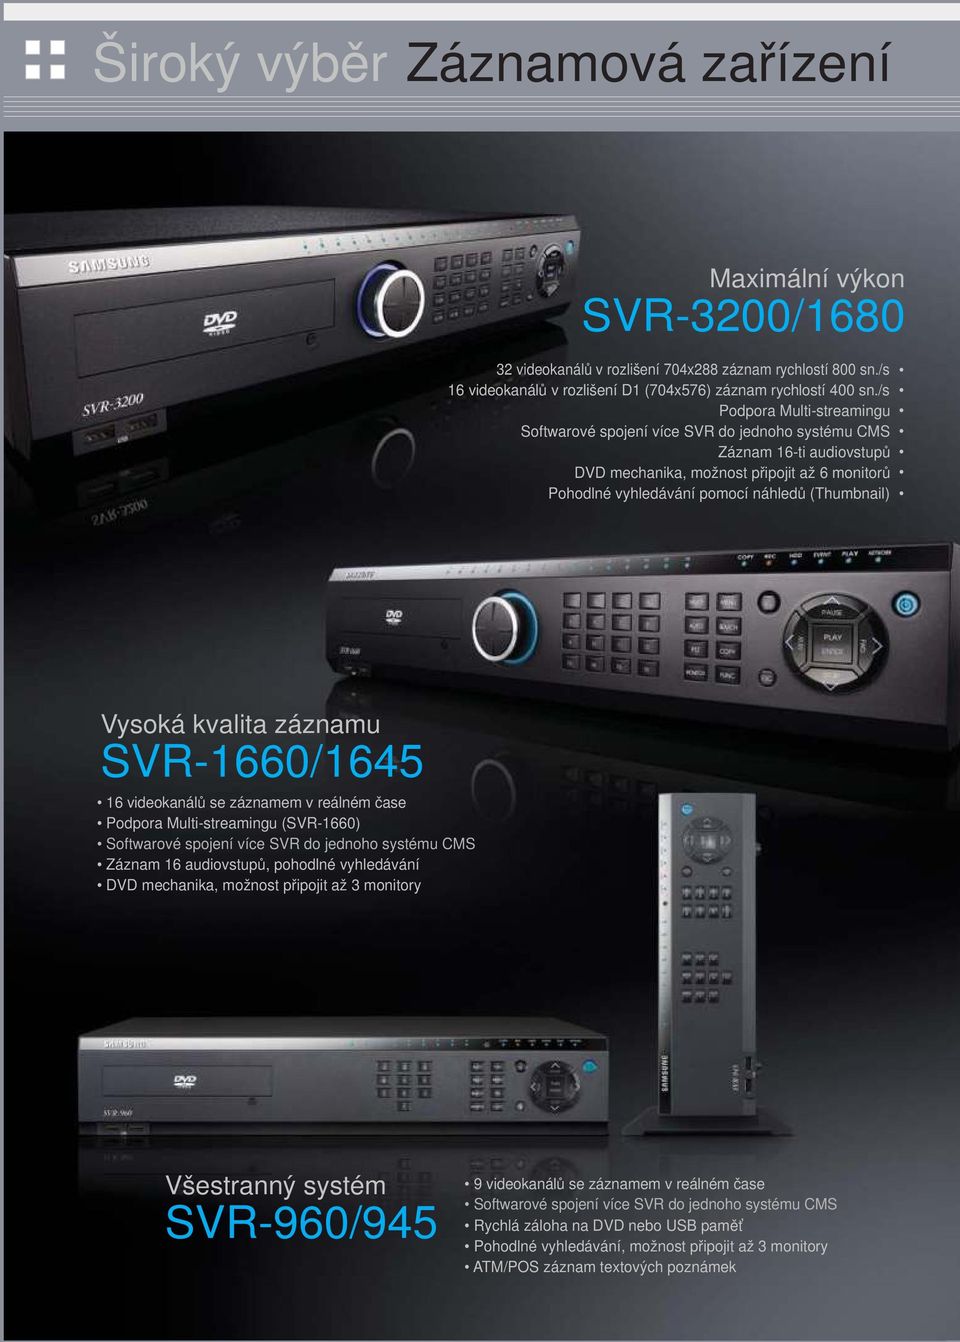 Vysoká kvalita záznamu SVR-1660/1645 16 videokanálů se záznamem v reálném čase Podpora Multi-streamingu (SVR-1660) Softwarové spojení více SVR do jednoho systému CMS Záznam 16 audiovstupů, pohodlné